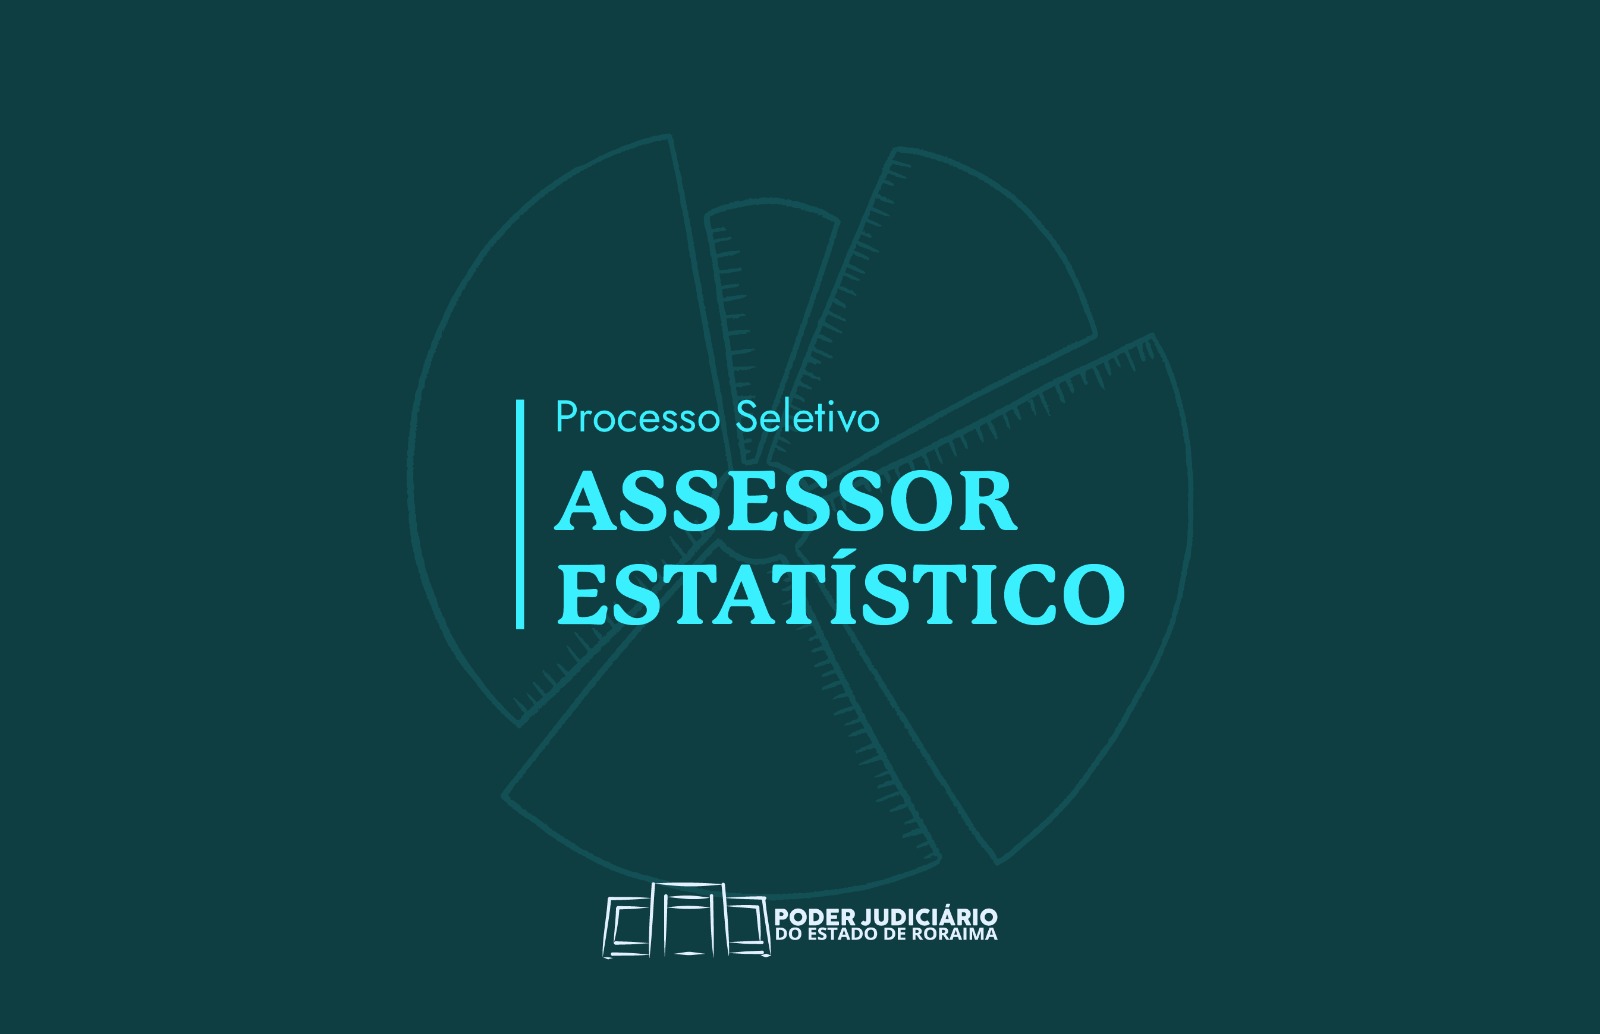 CORREGEDORIA-GERAL TJRR publica edital de processo seletivo para vaga de assessor estatístico